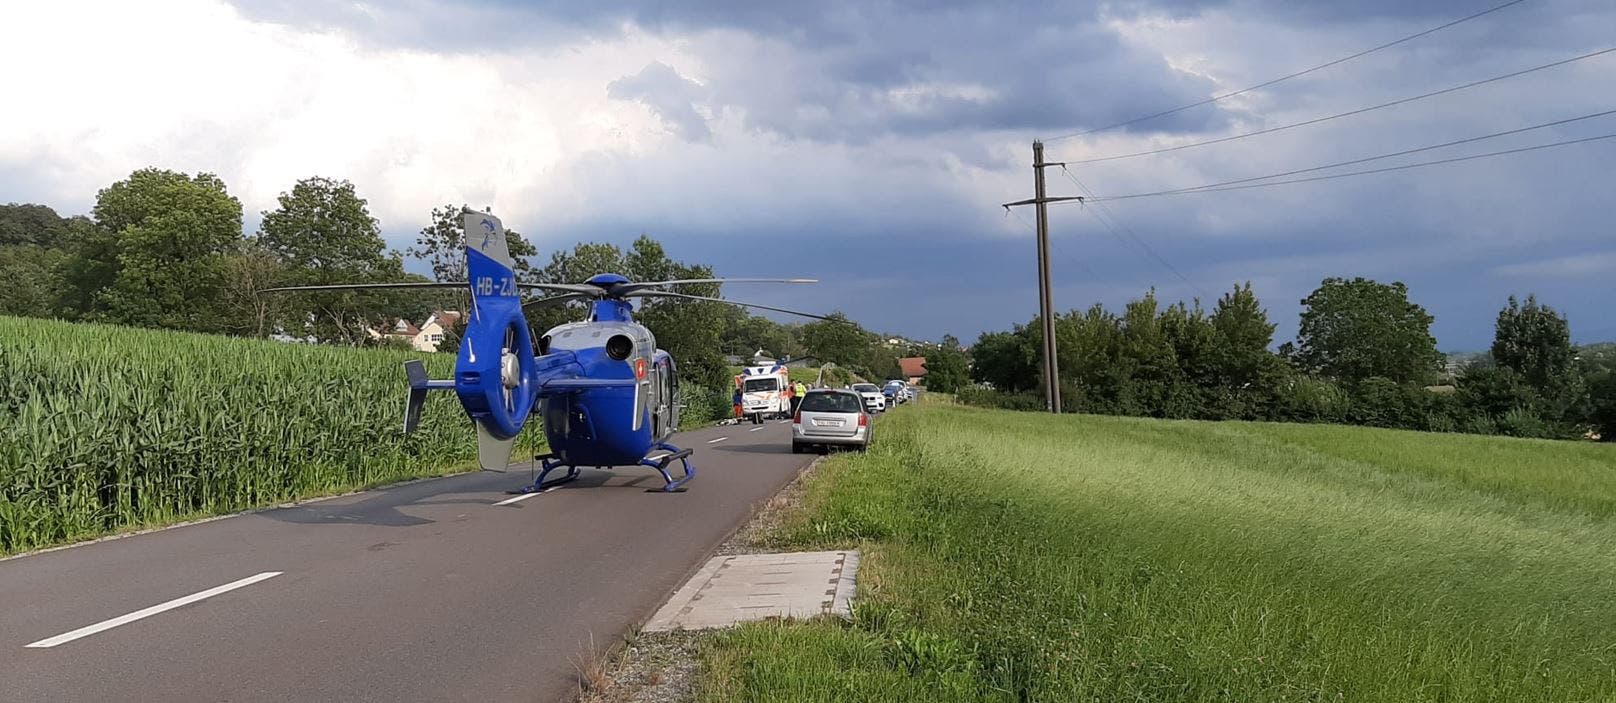 Unterlunkhofen AG, 28. Juli: Eine 14-jährige Mofa-Fahrerin wurde am Dienstag in Unterlunkhofen von einem Auto erfasst und schwer verletzt.